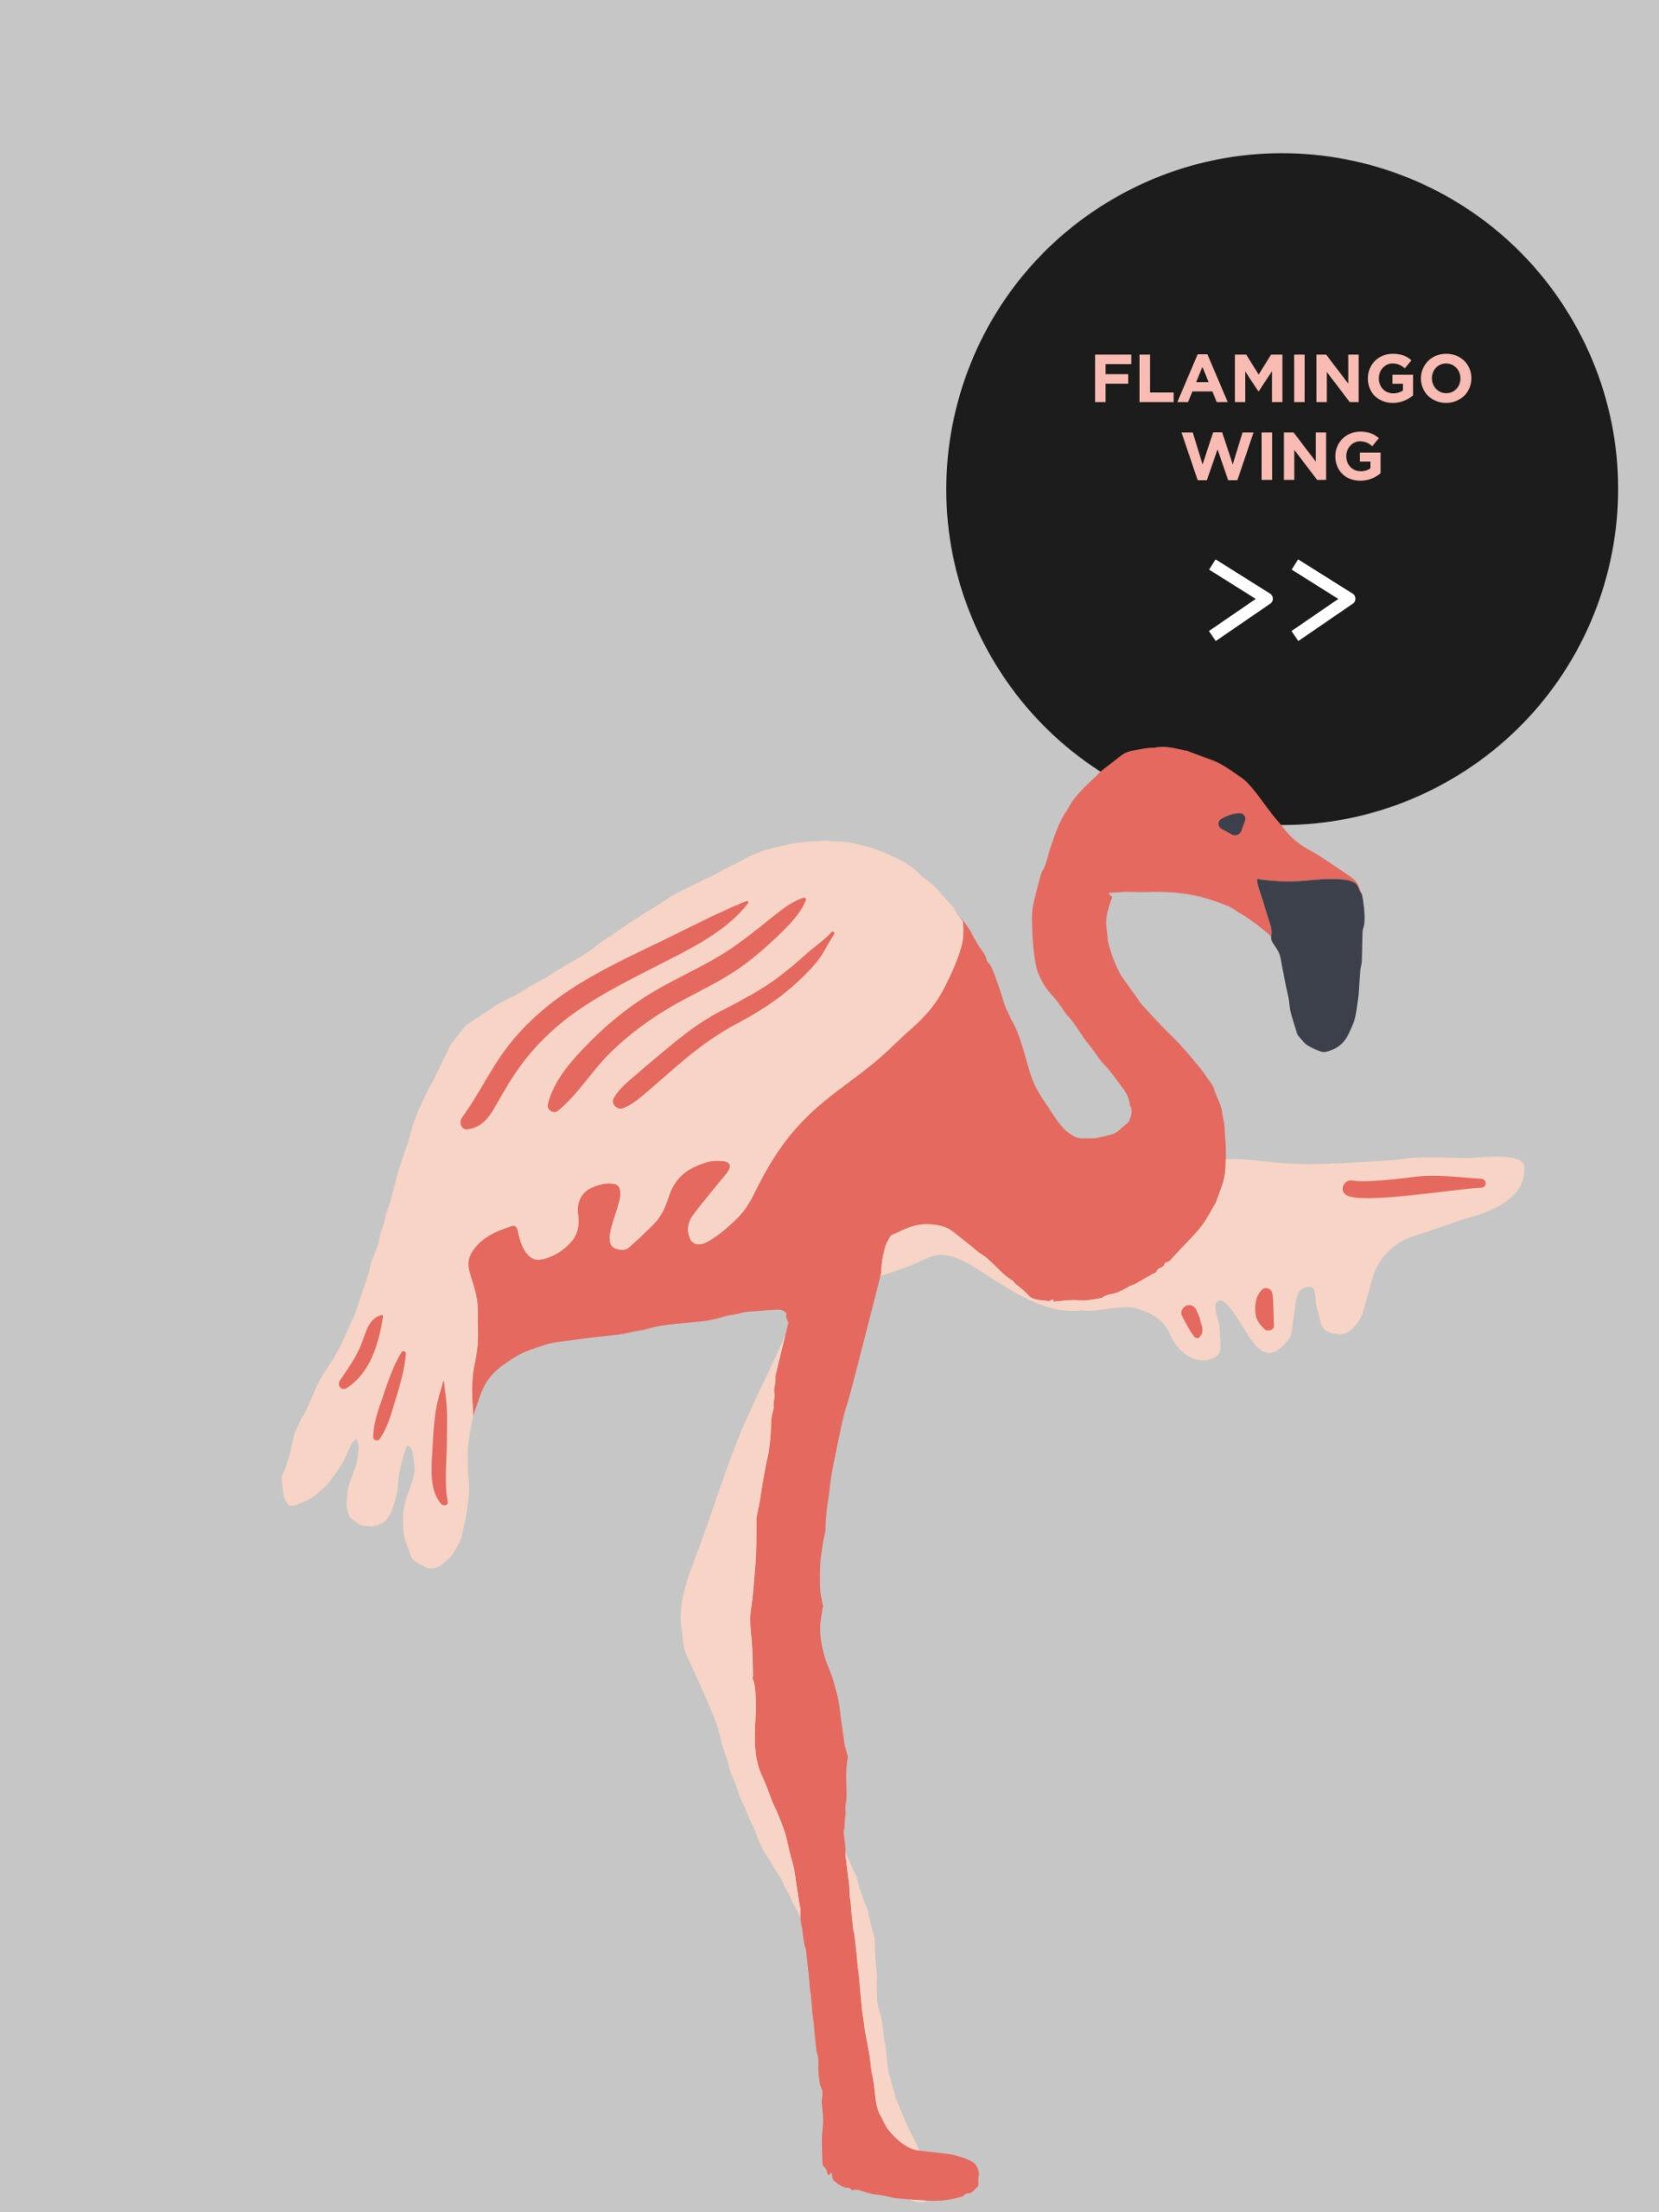 Rune & Berg Designin suunnittelemaa graafista ilmettä Sokos Hotelli Flamingoon